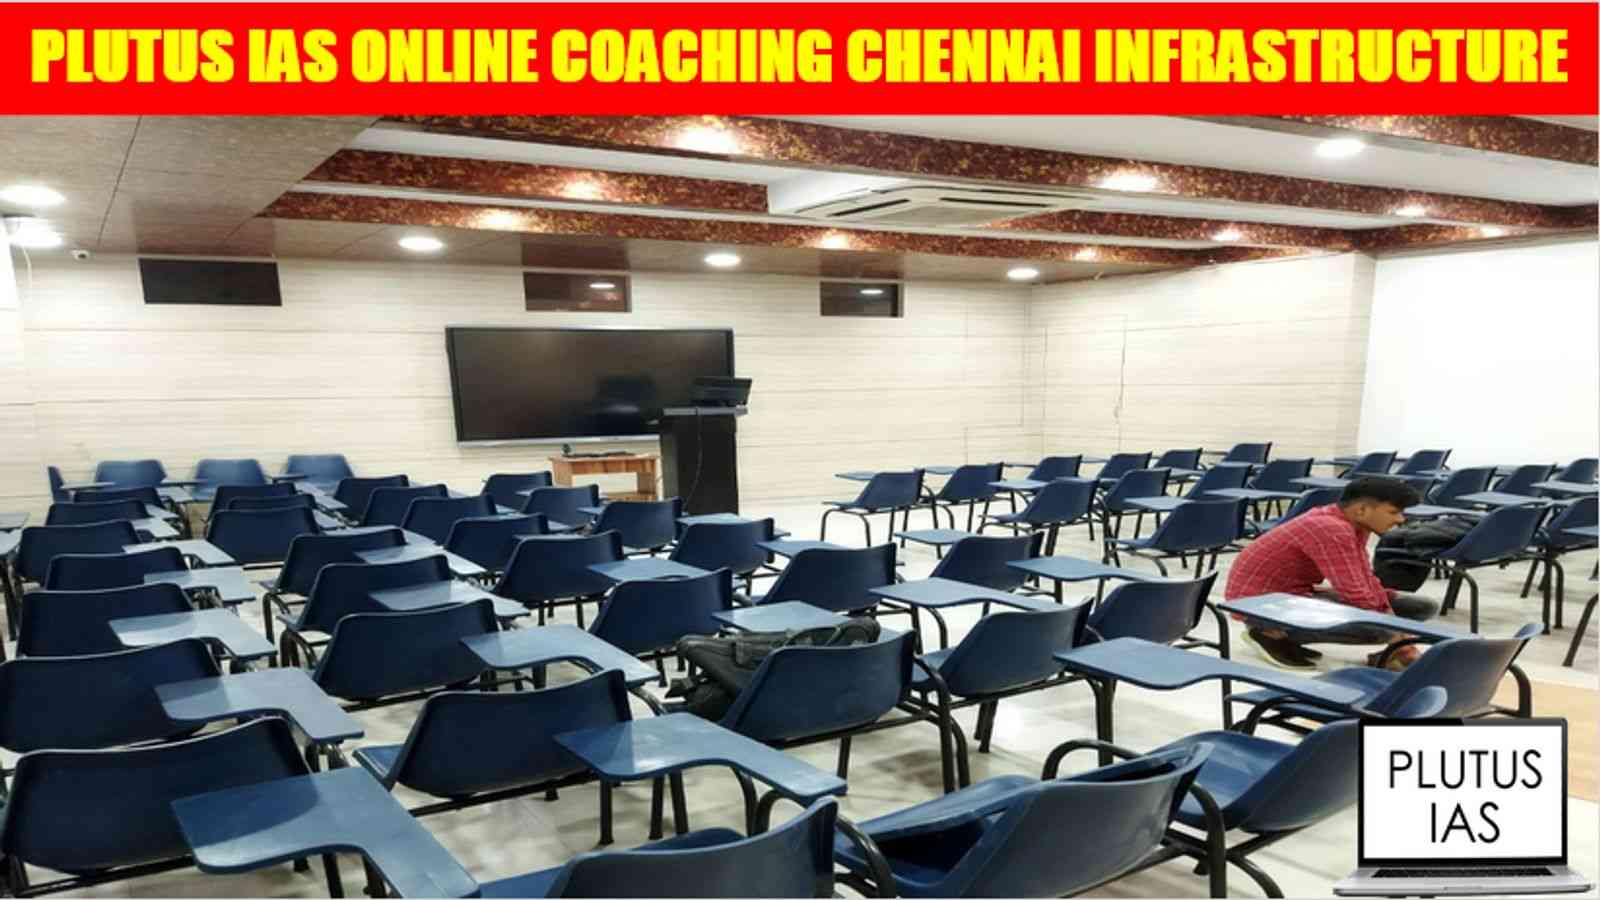 Plutus IAS Online Coaching Chennai Infrastructure